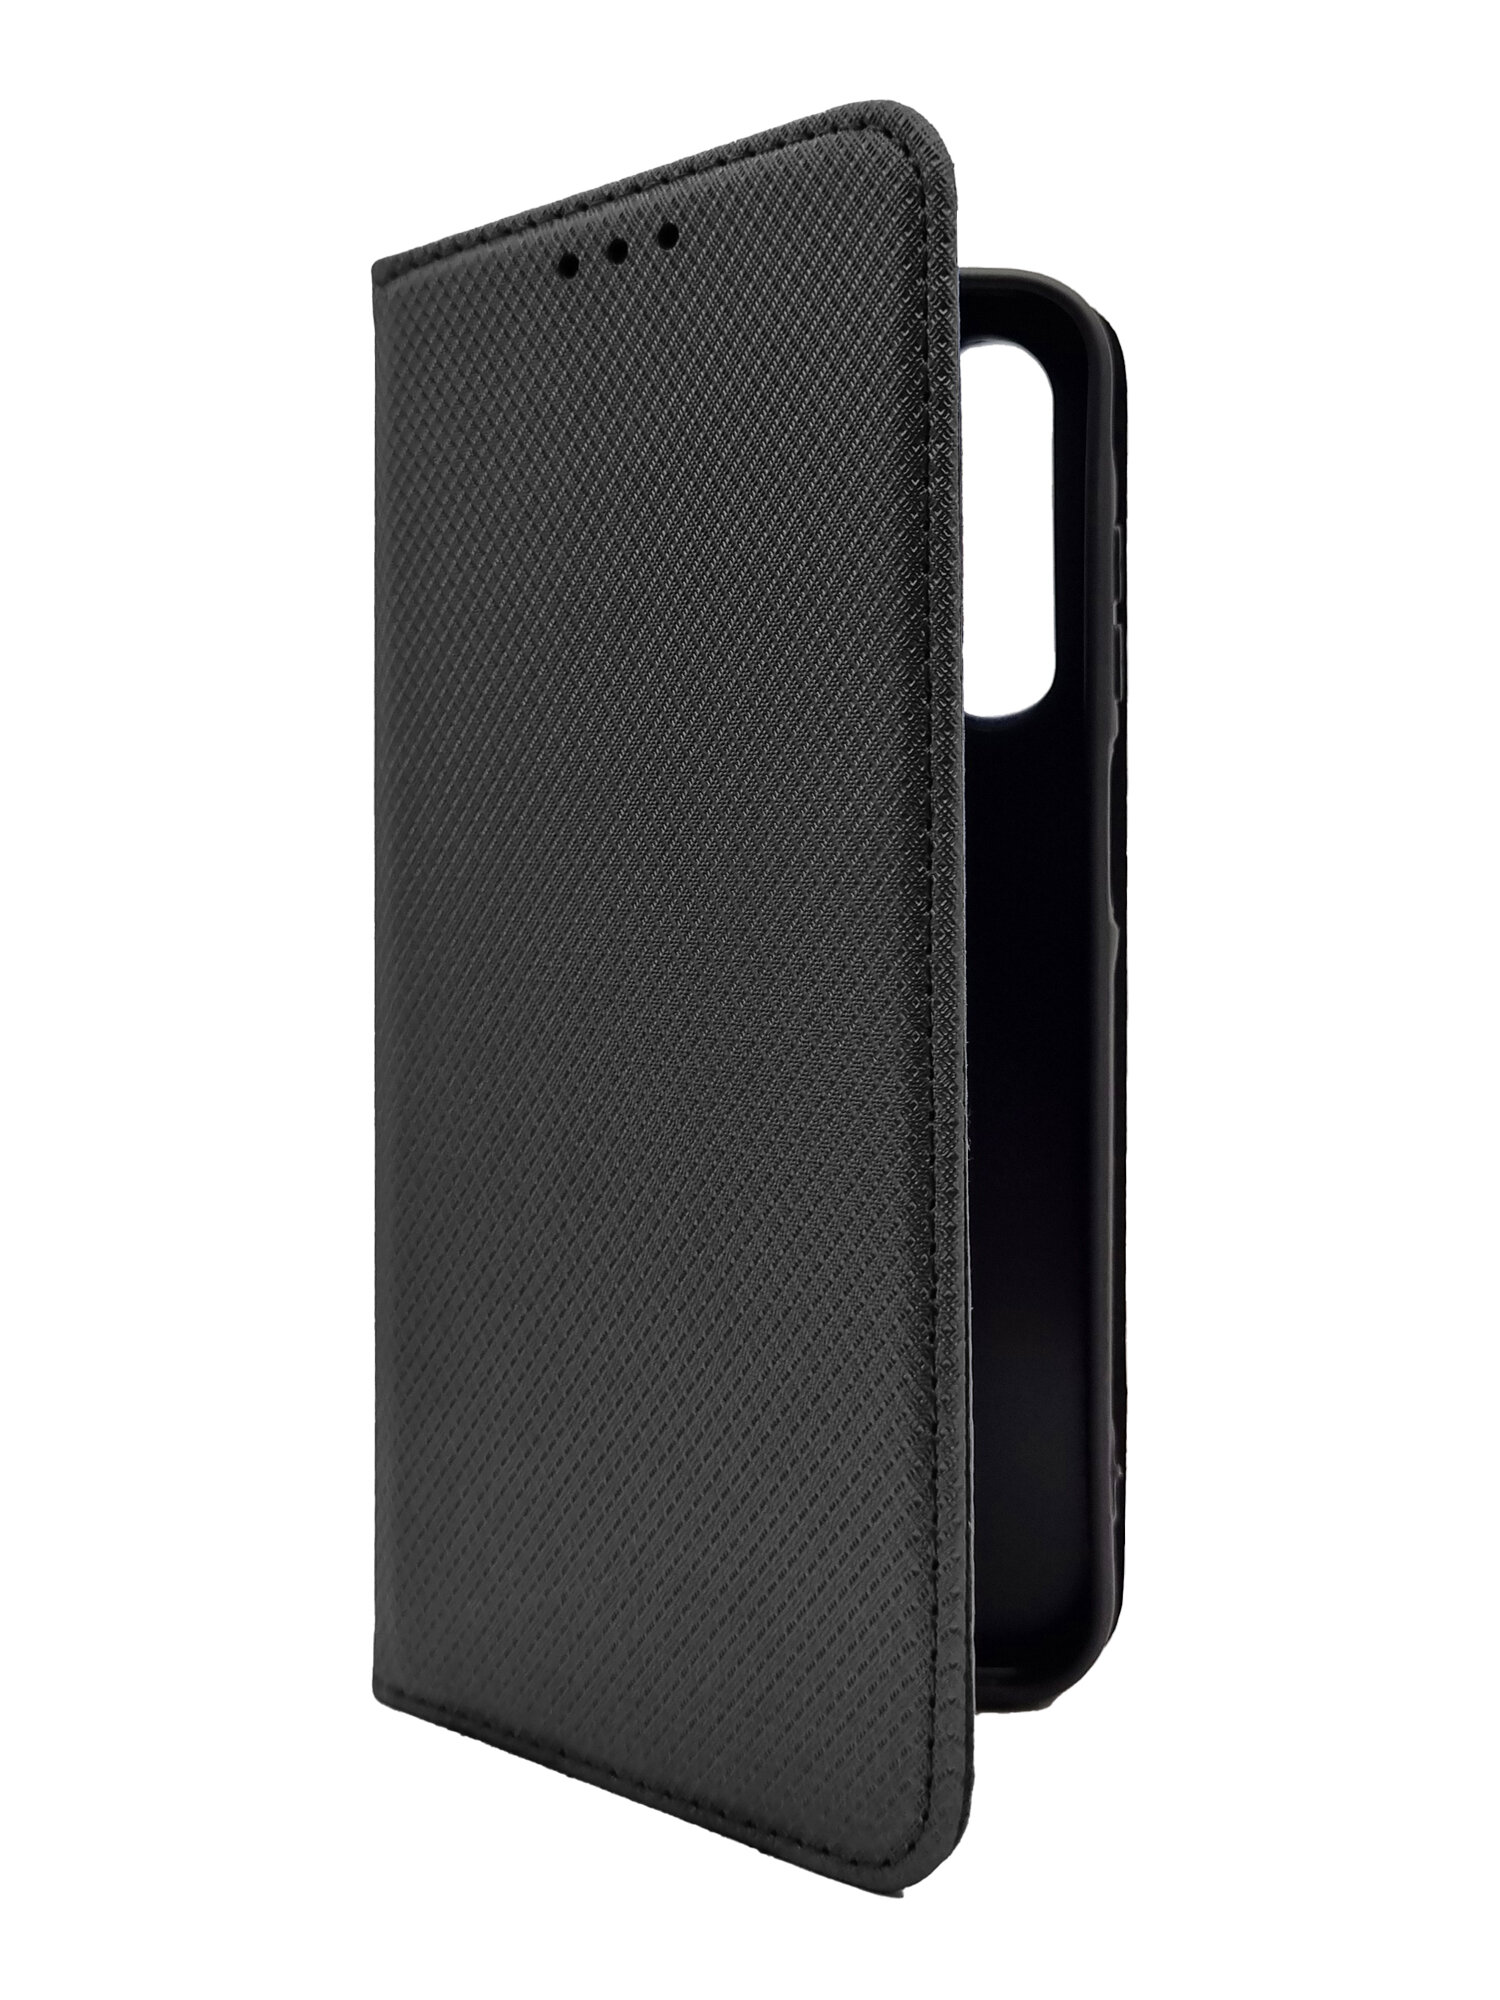 Чехол на Samsung Galaxy A35 (Самсунг Галакси А35) черный книжка плетёнка с функцией подставки с отделением для карт и магнитами Fold Case, Brozo